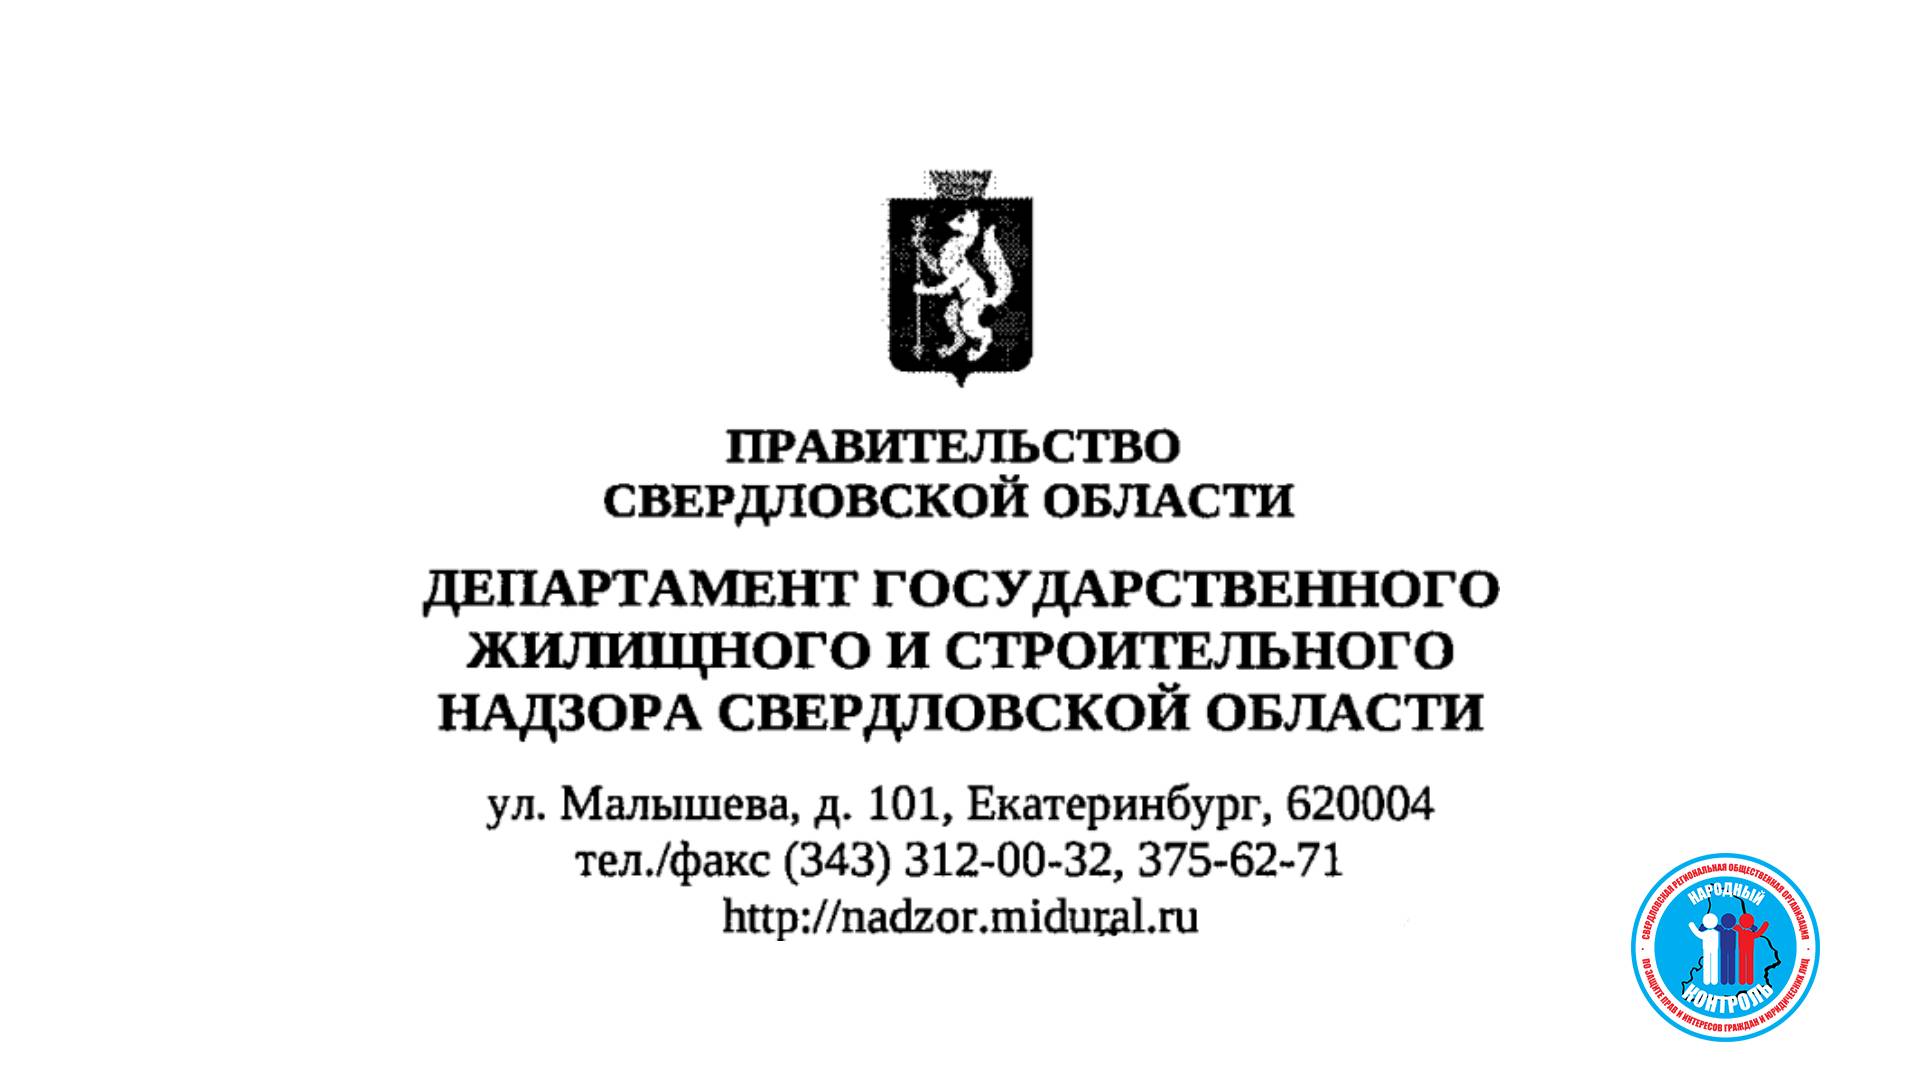 Телефон министерства строительства. Департамент жилищного и строительного надзора Свердловской области.